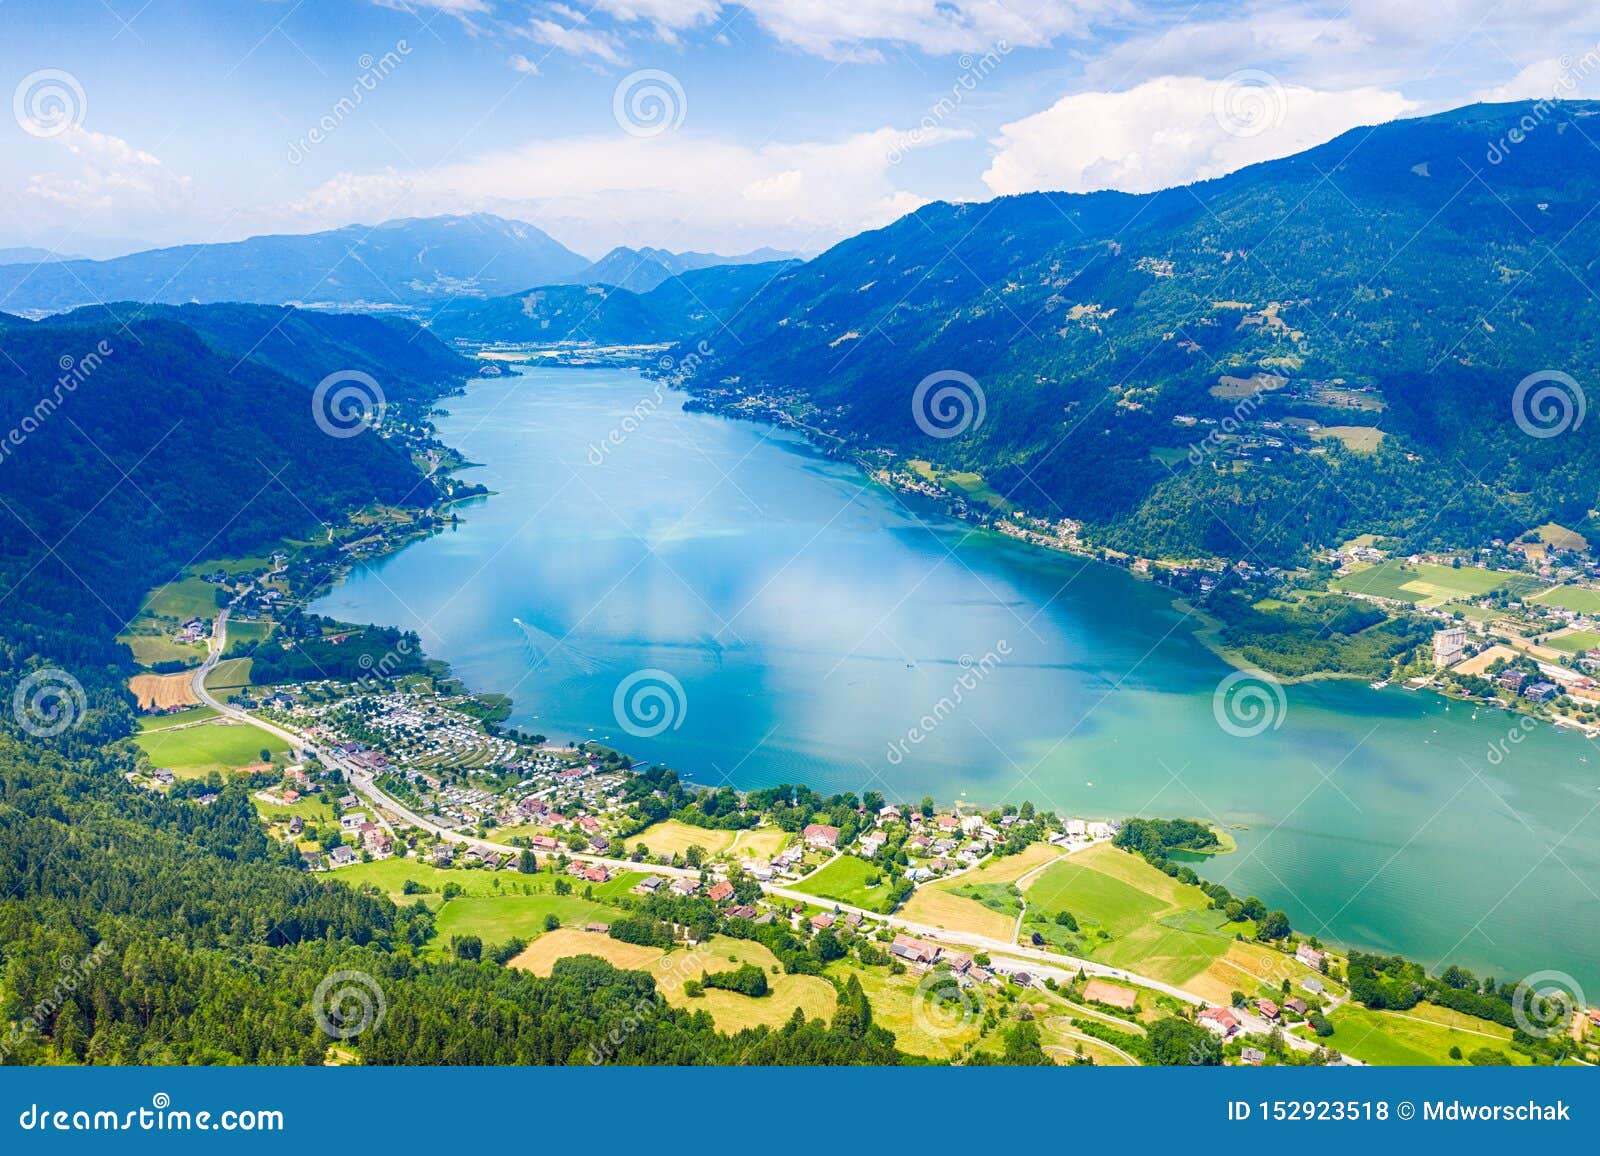 ossiacher see in kÃÂ¤rnten. scenic summertime panorama of lake ossiach